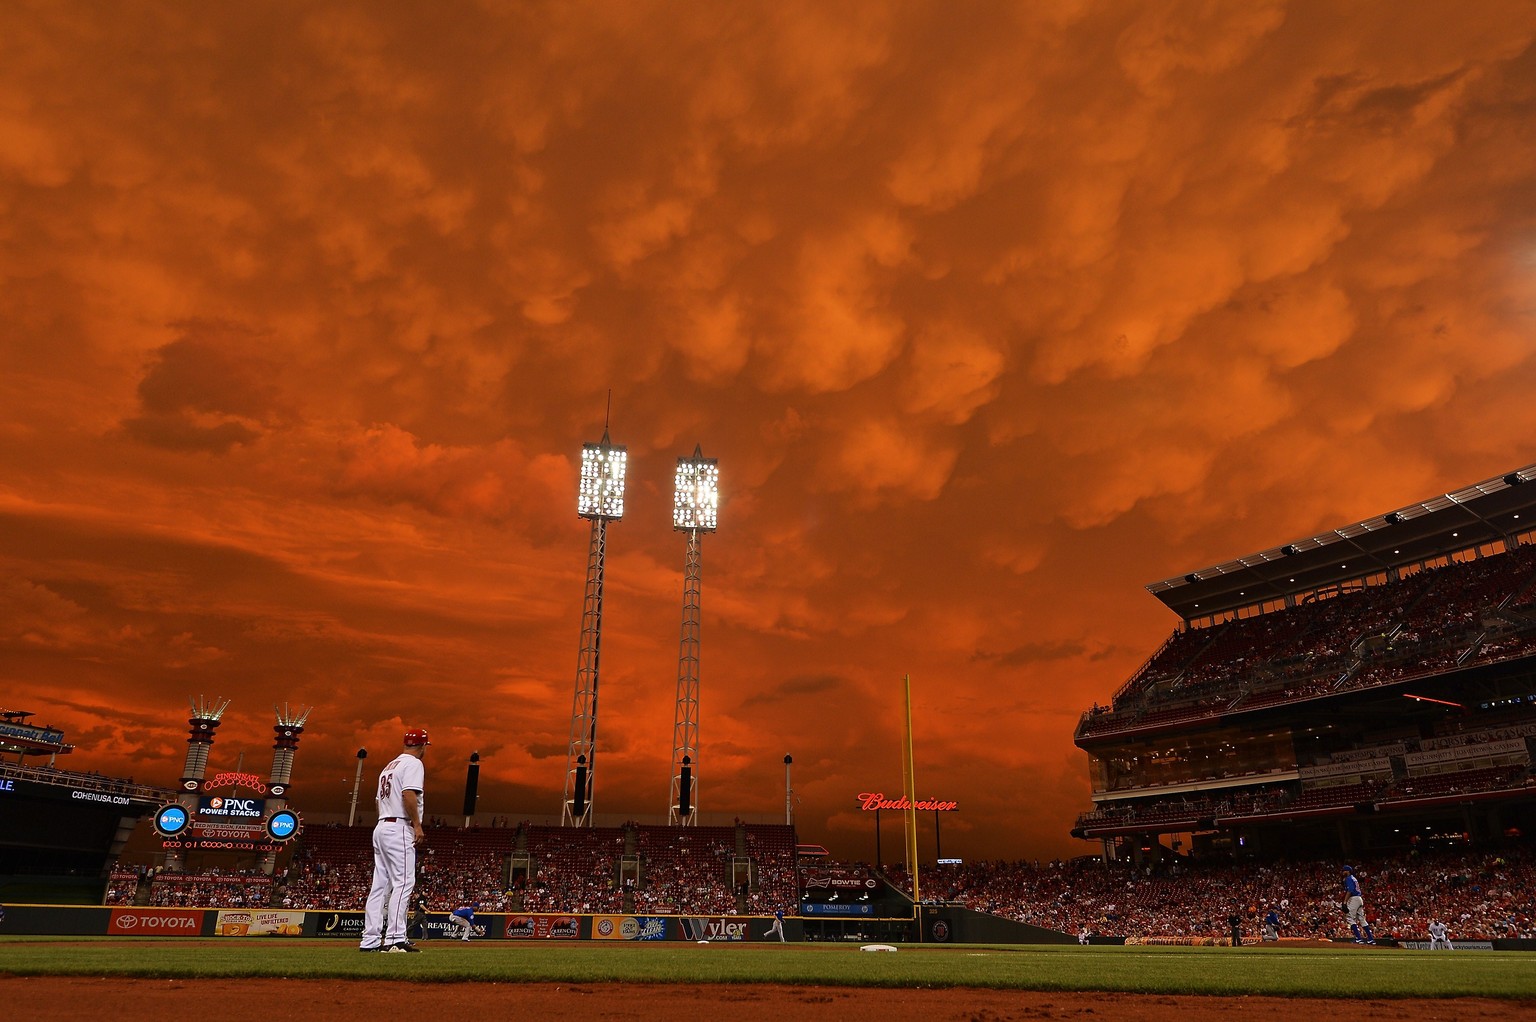 Beim Baseball-Spiel zwischen den Cincinnati Reds – der Name ist offenbar Programm – und den Chicago Cubs zieht letzte Woche ein Sturm auf und die Zuschauer erleben ein beeindruckendes Naturspektakel.  ...